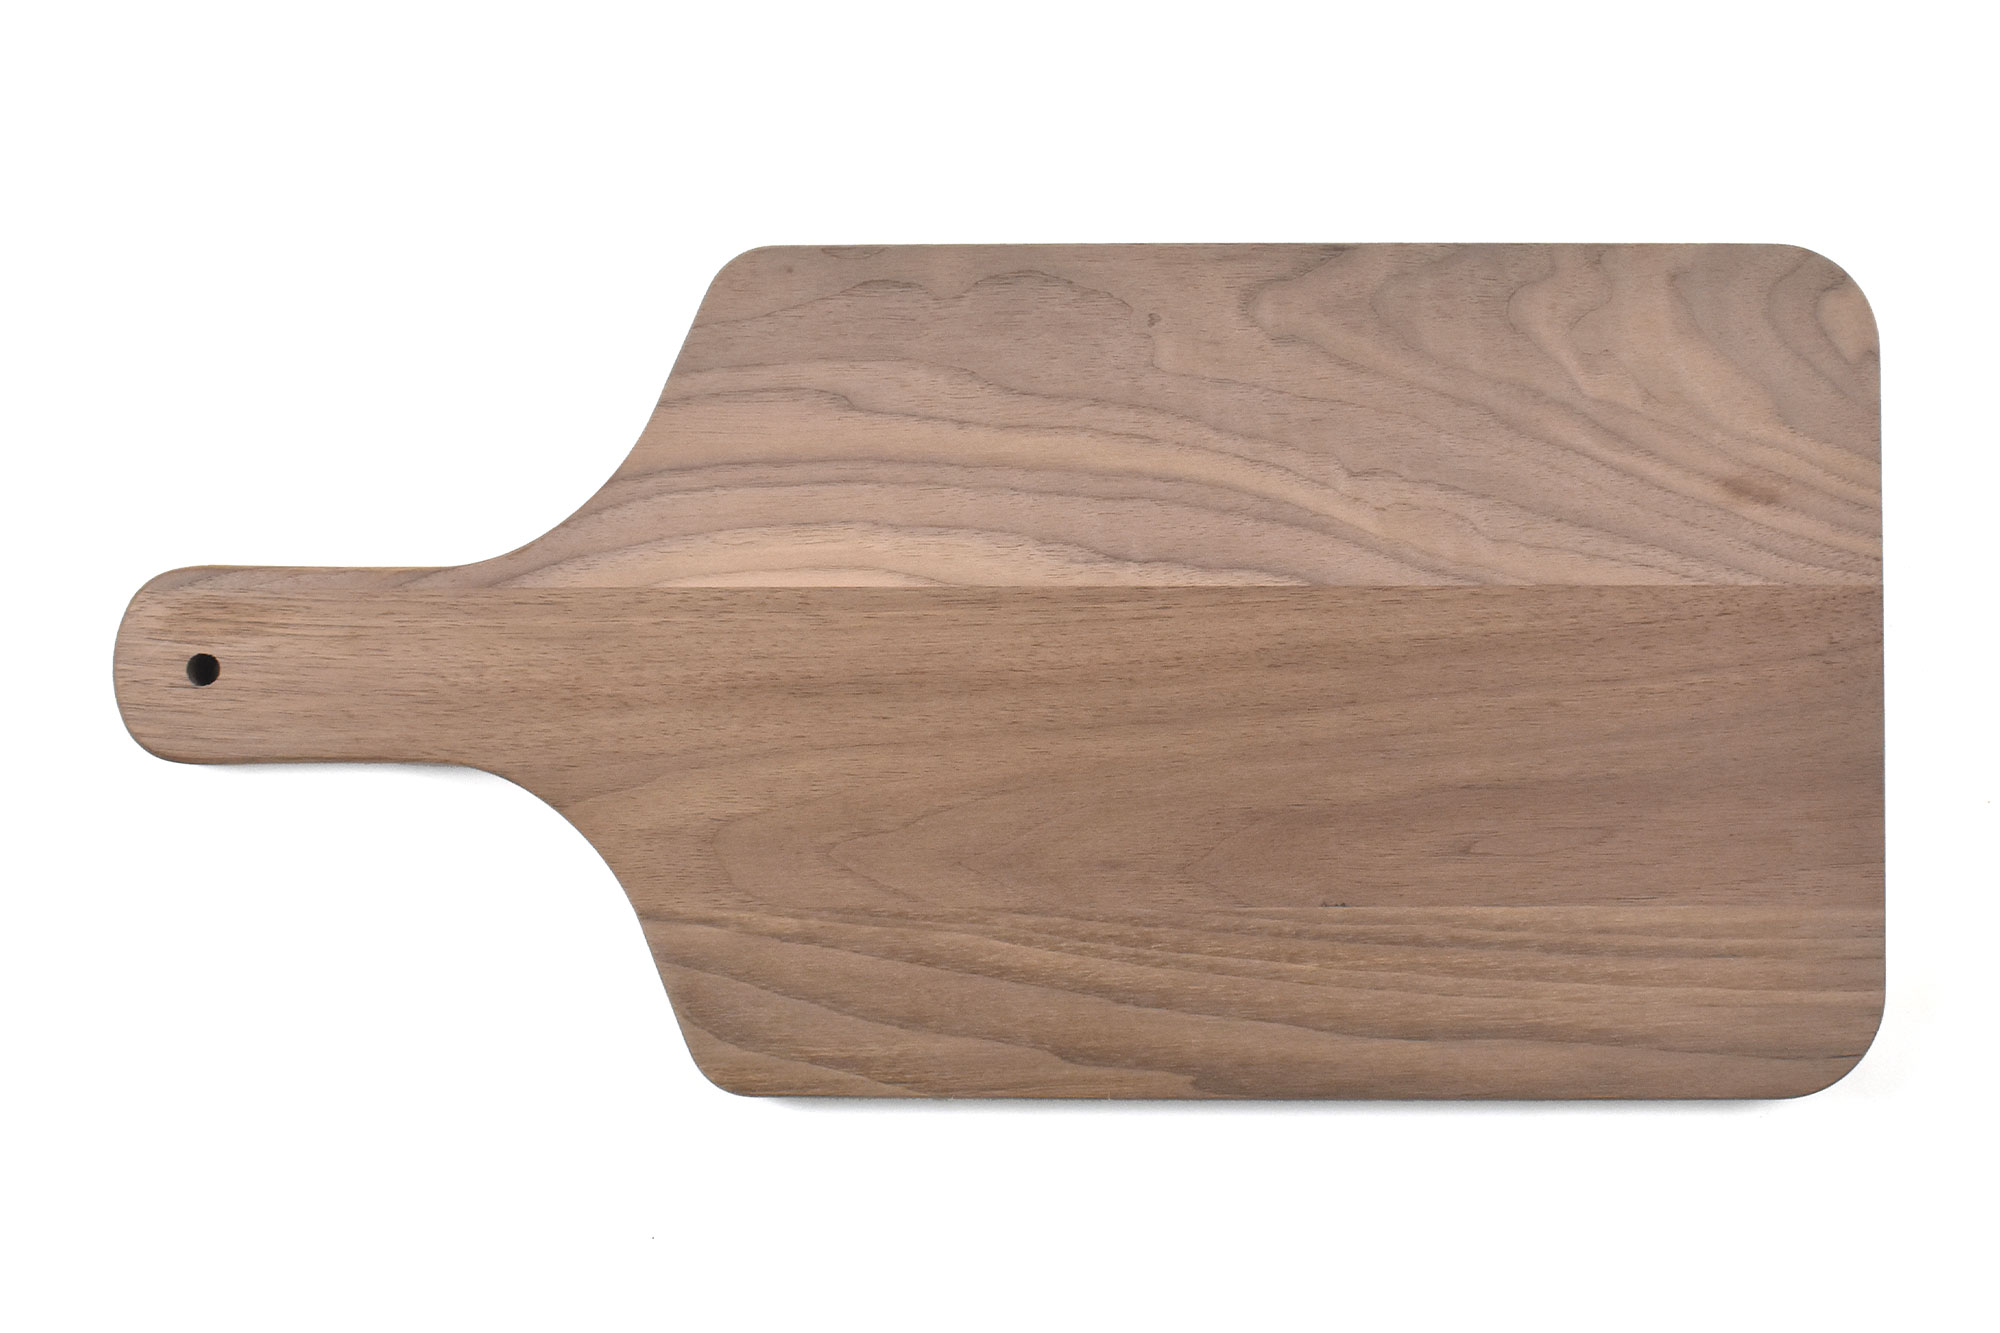 Walnut Wood Cutting Board with Handle